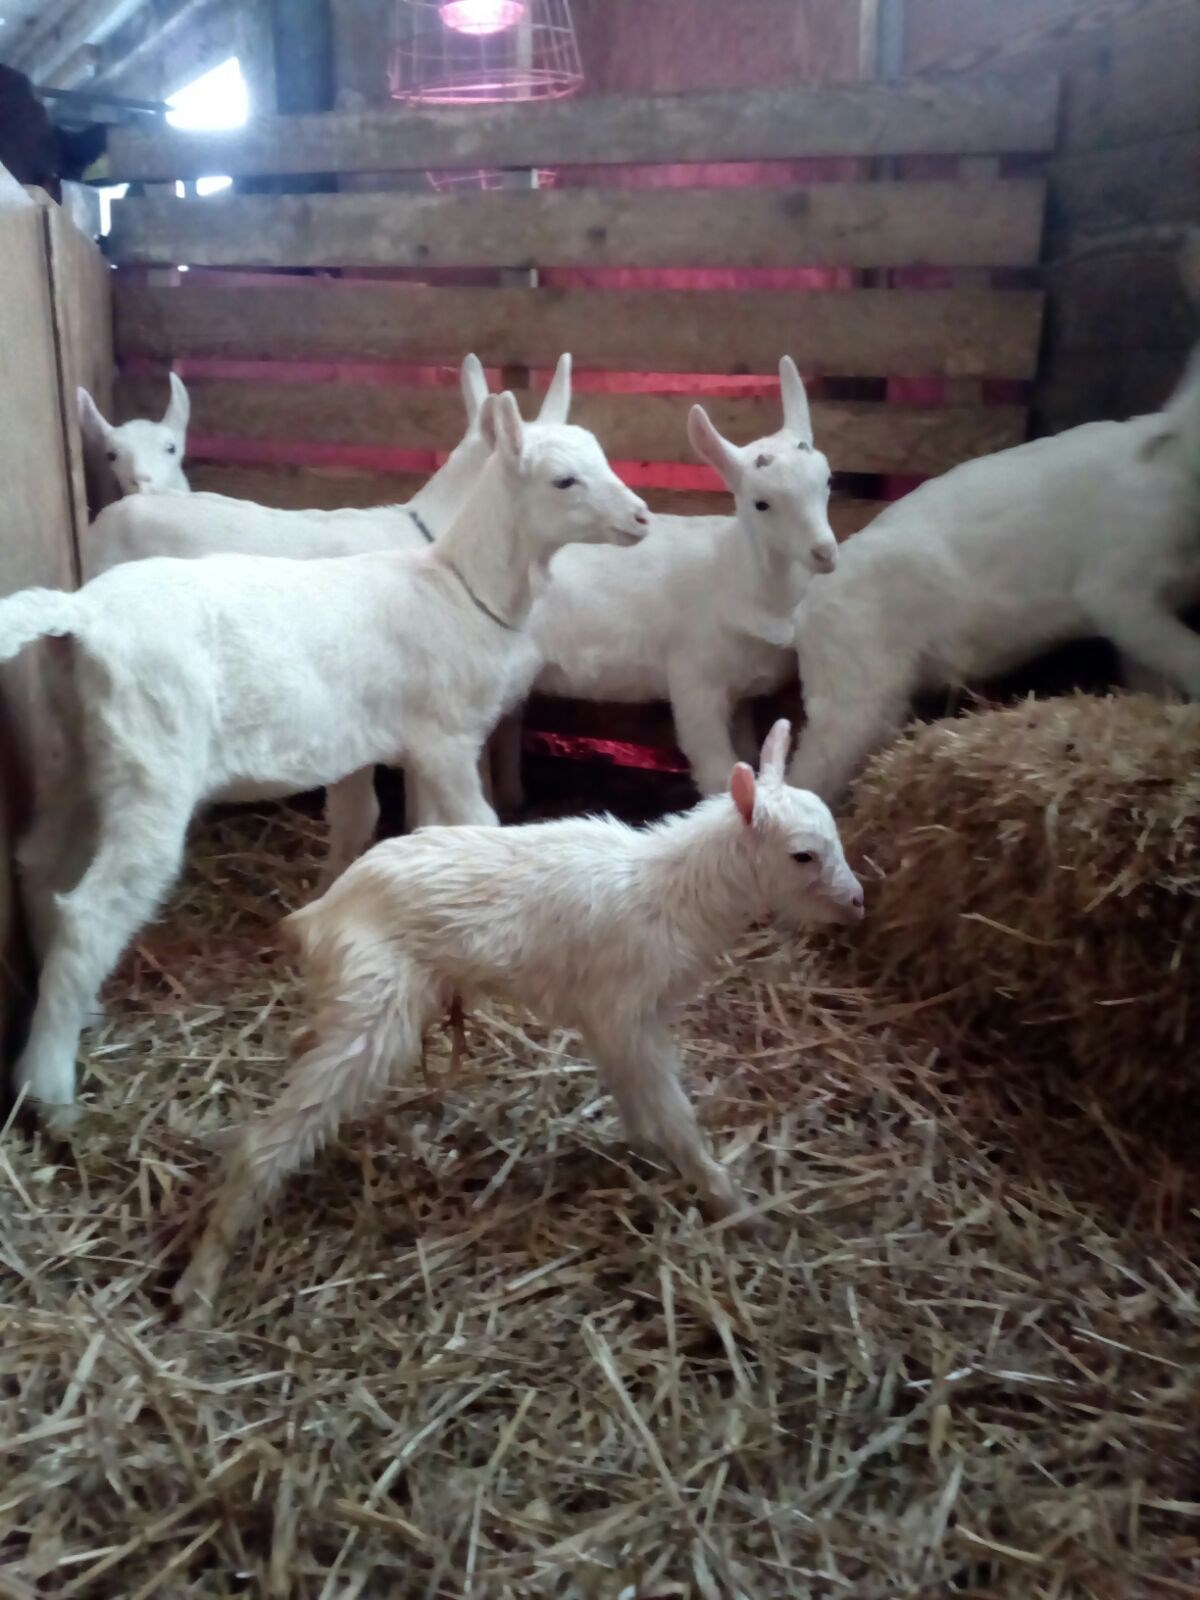 Bauernhof Salwideli Our animals Goats